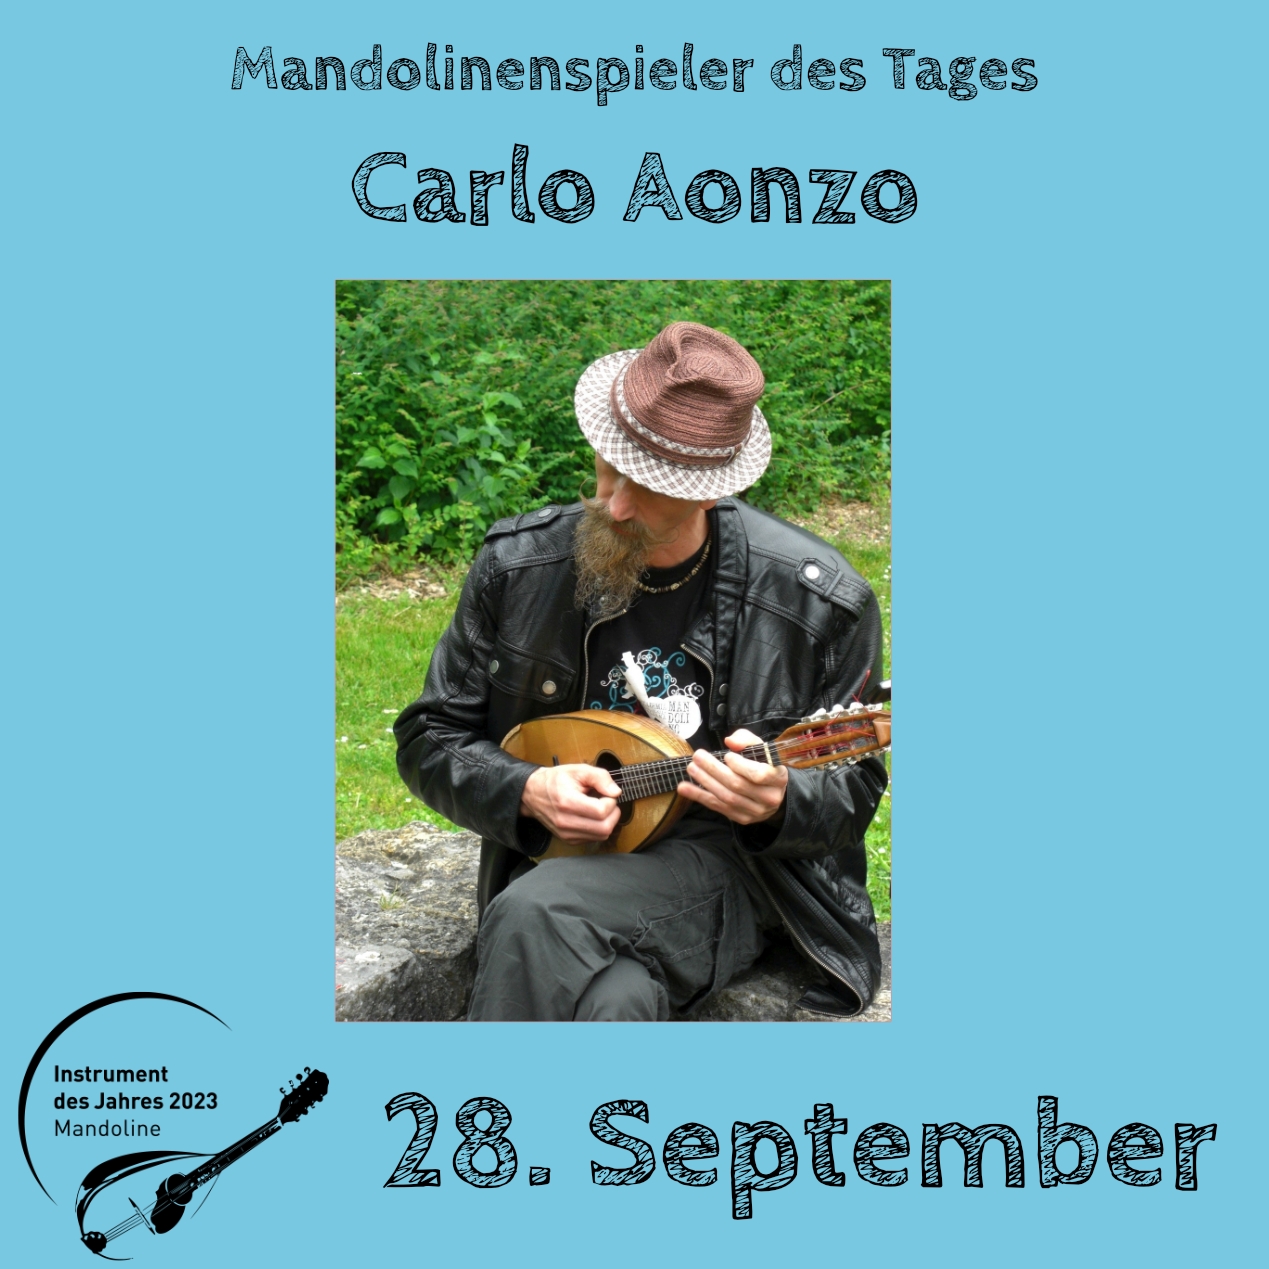 Carlo Aonzo Mandolinenspielerin Mandolinenspieler des Tages Mandoline Instrument des Jahres 2023